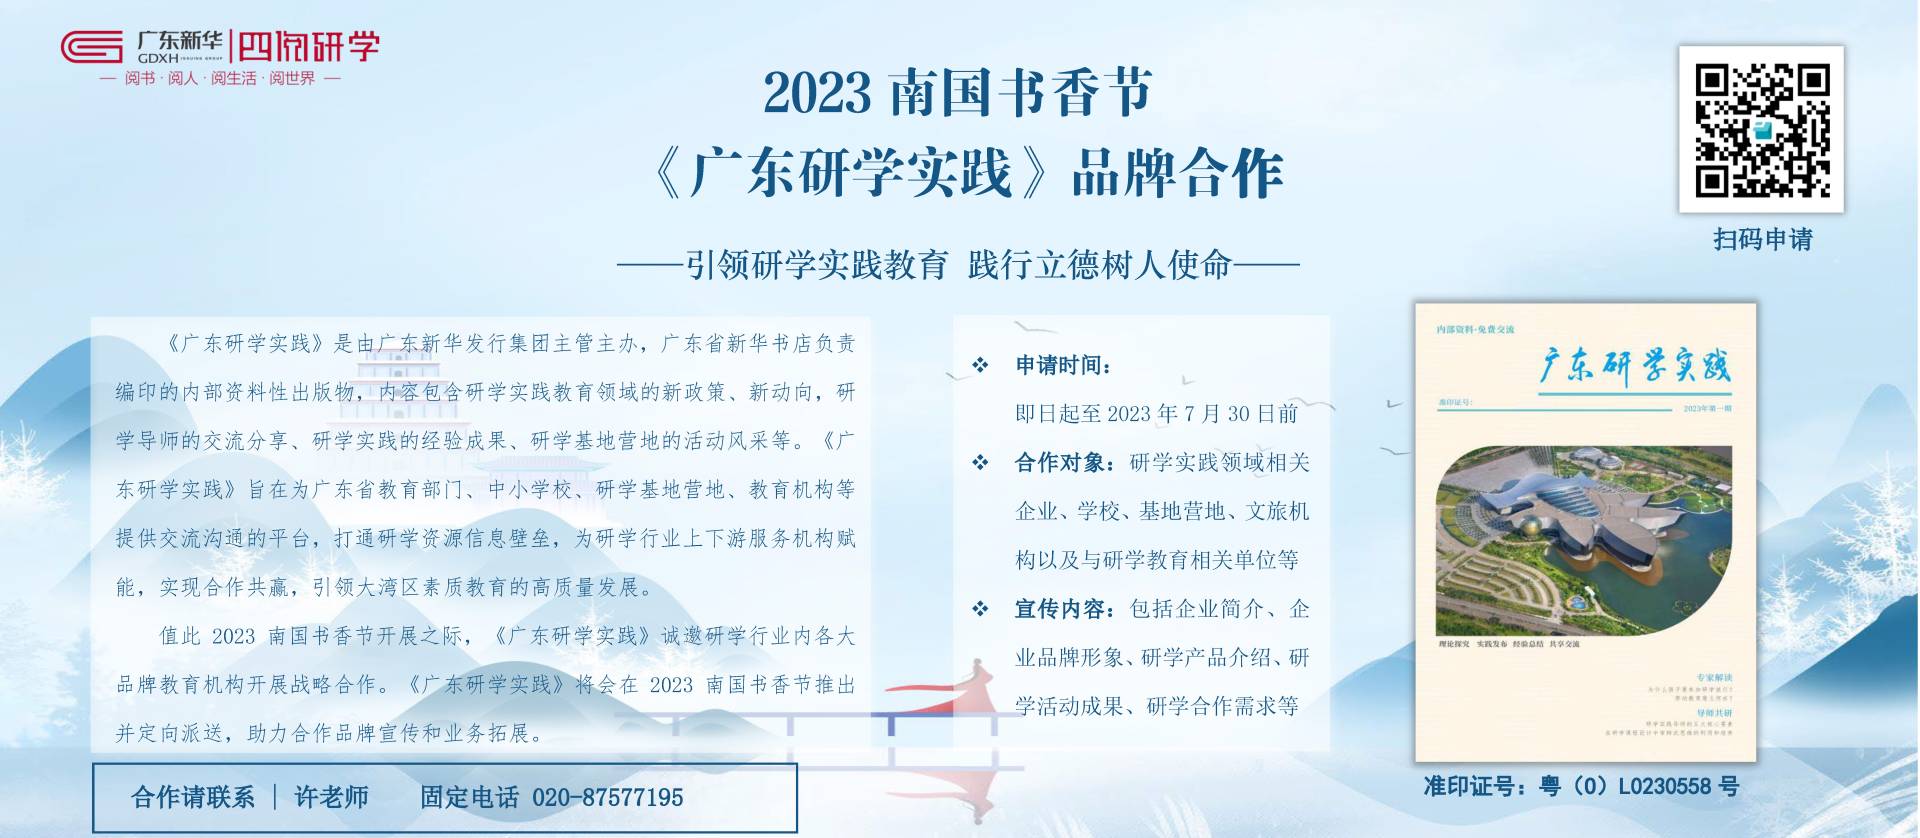 2023南国书香《广东研学实践》品牌合作